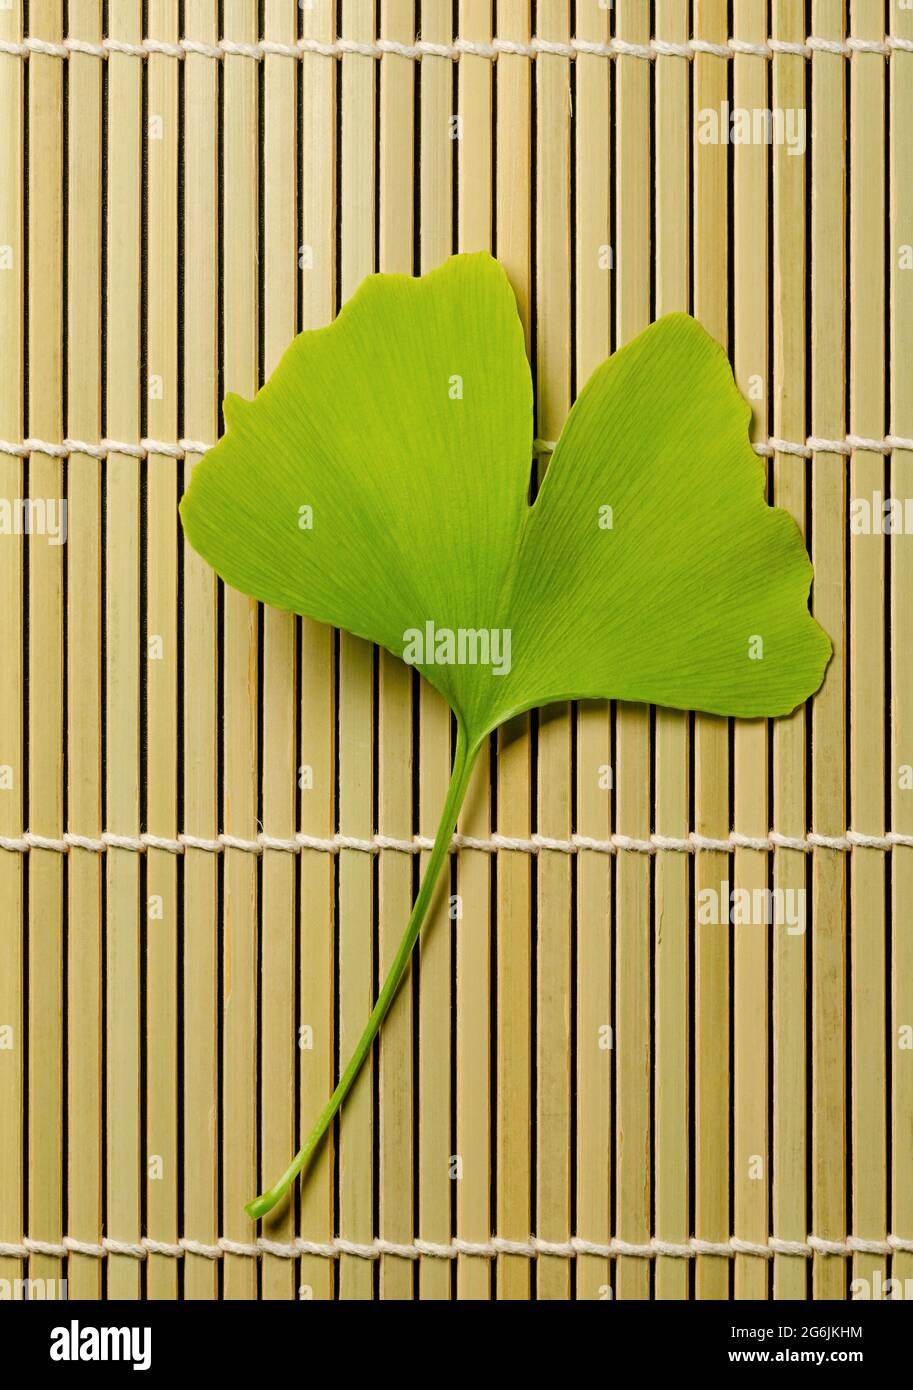 Una sola hoja de ginkgo sobre una alfombrilla de bambú. Ginkgo biloba, también conocido como gingko o árbol maidenhair, árbol oficial de la capital japonesa Tokio. Foto de stock